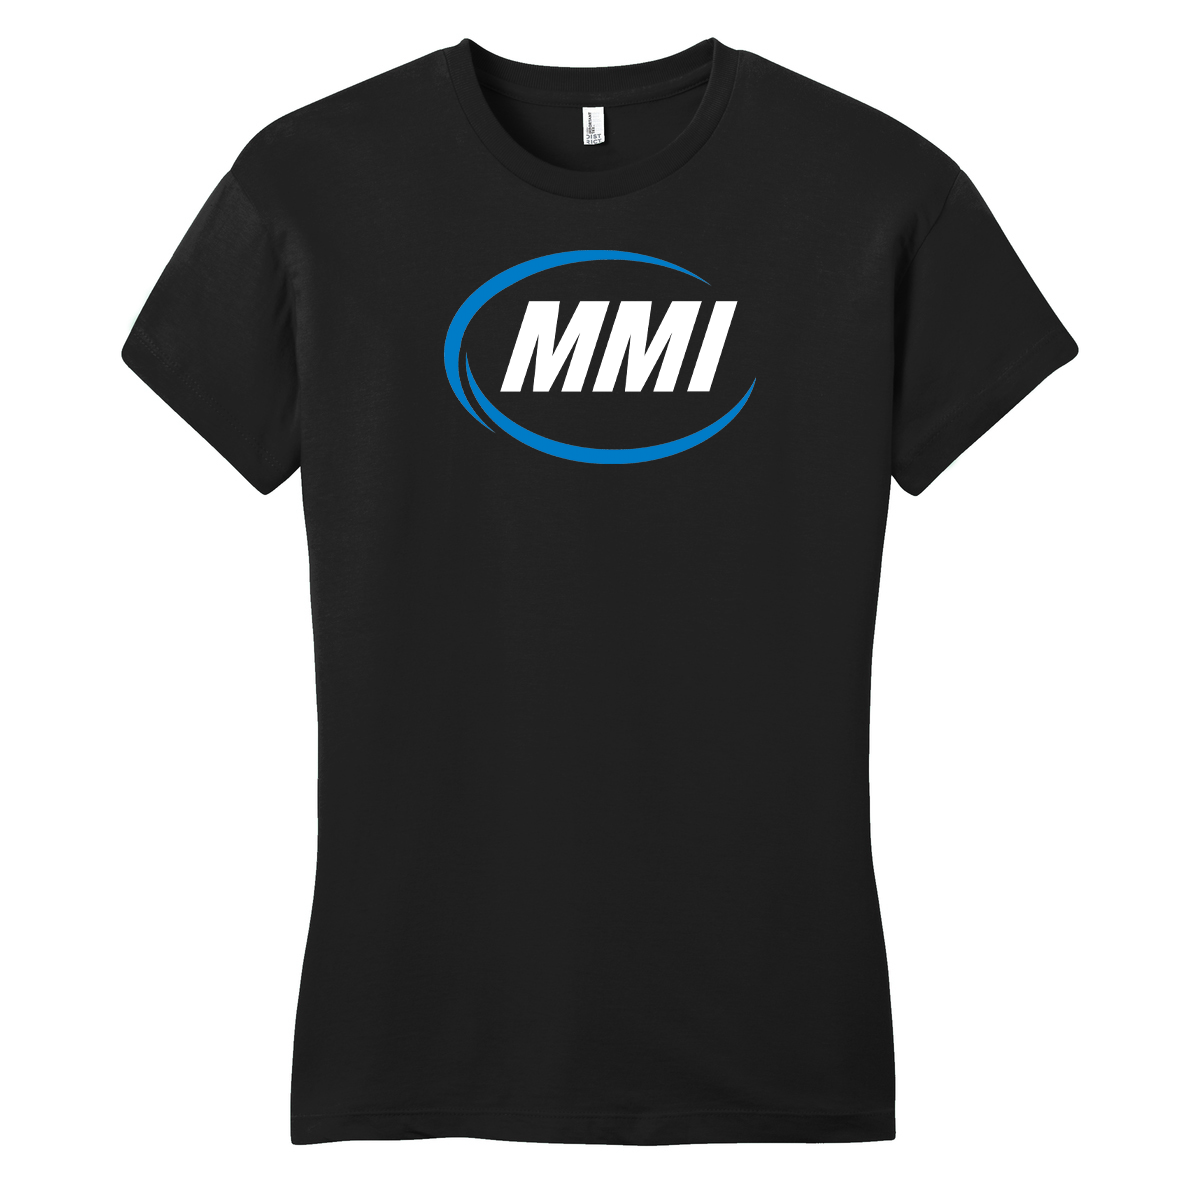 MMI (Marine) Iconic Logo Womens T-Shirt